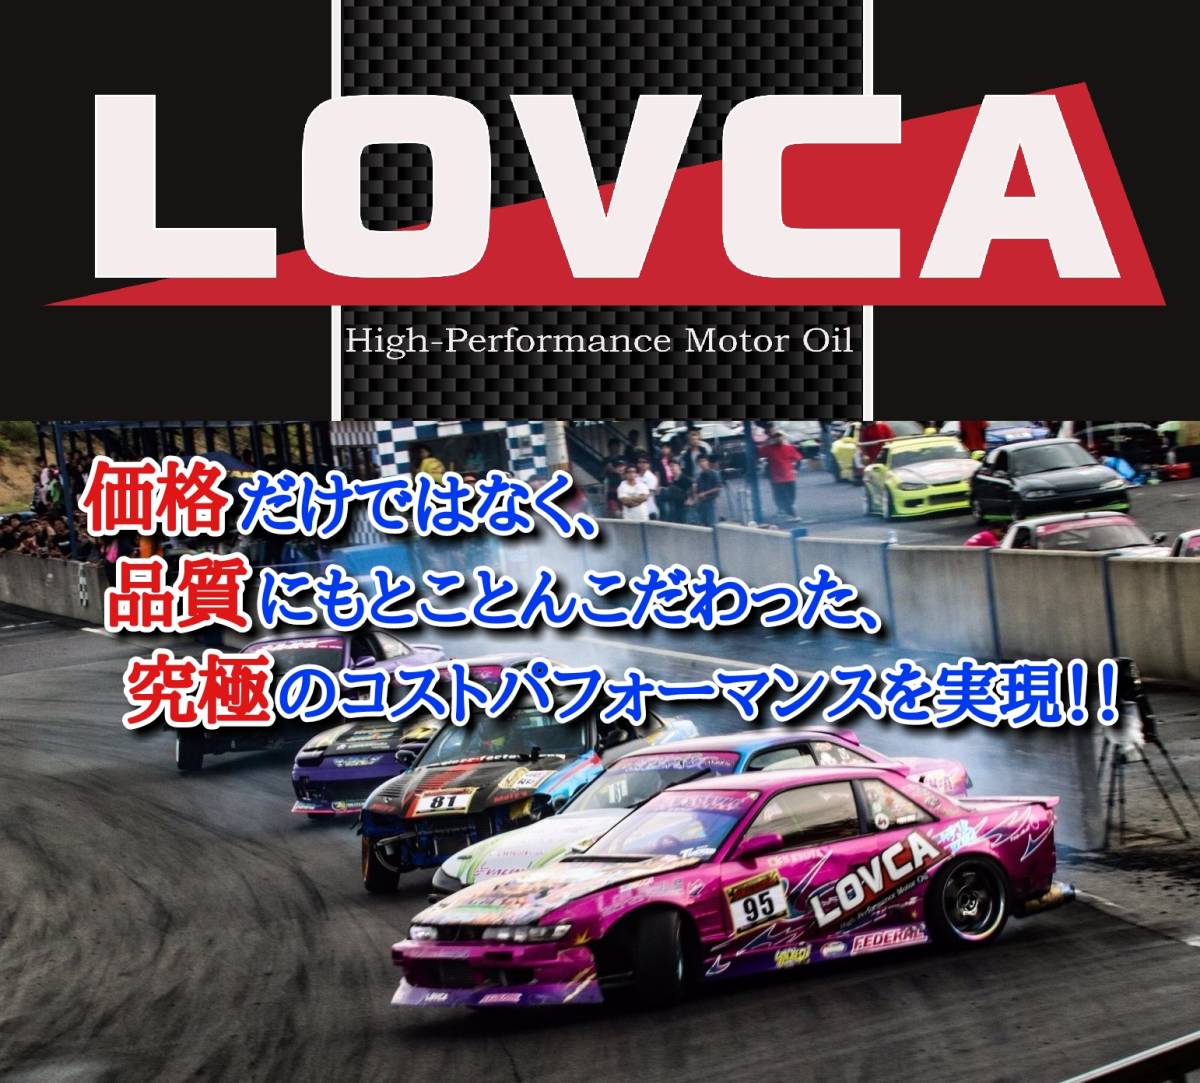 # бесплатная доставка #LOVCA MULTI-GEAR 85W-140 20L#GL-5 автоматический LSD соответствует # высокое качество минерал сделано в Японии # дрифт место для спортивных состязаний .#85W140 85-140#LMG85140-20